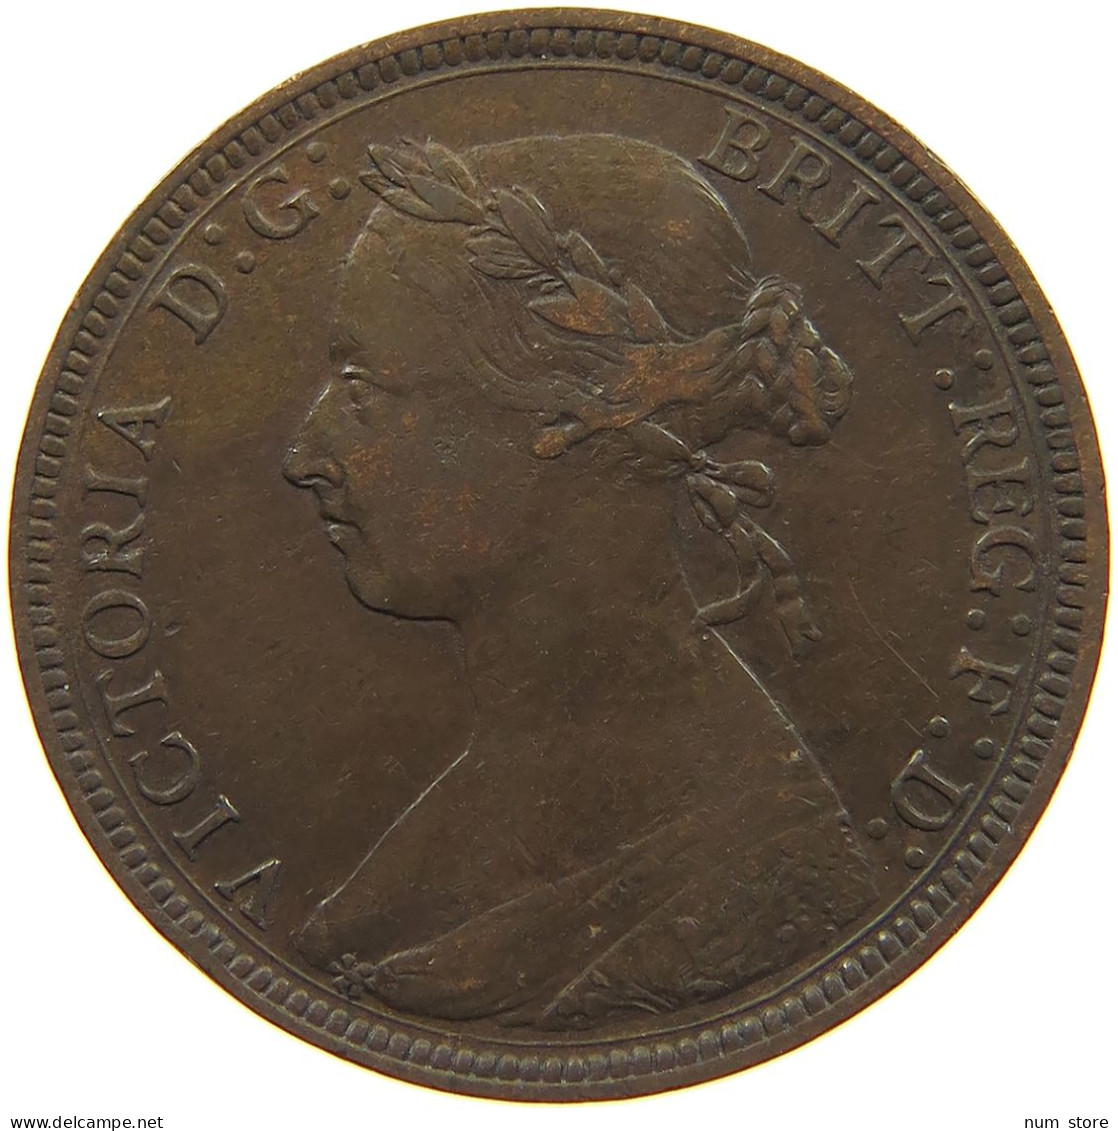 GREAT BRITAIN HALFPENNY 1886 Victoria 1837-1901 #c018 0137 - C. 1/2 Penny